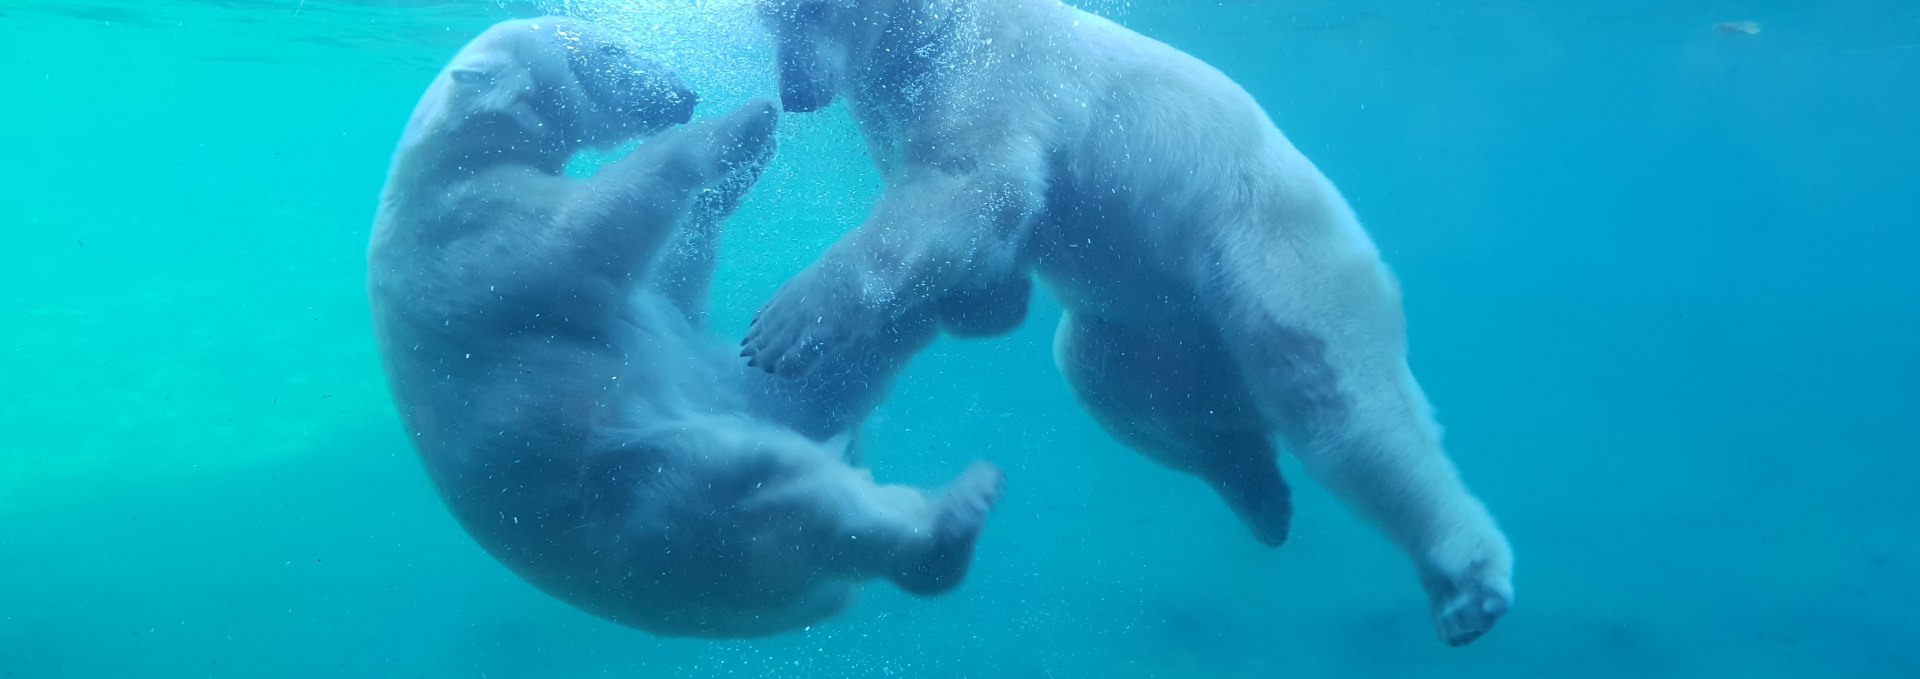 Den Eisbären ganz nah im Polarium, © Zoo Rostock/Bruhn